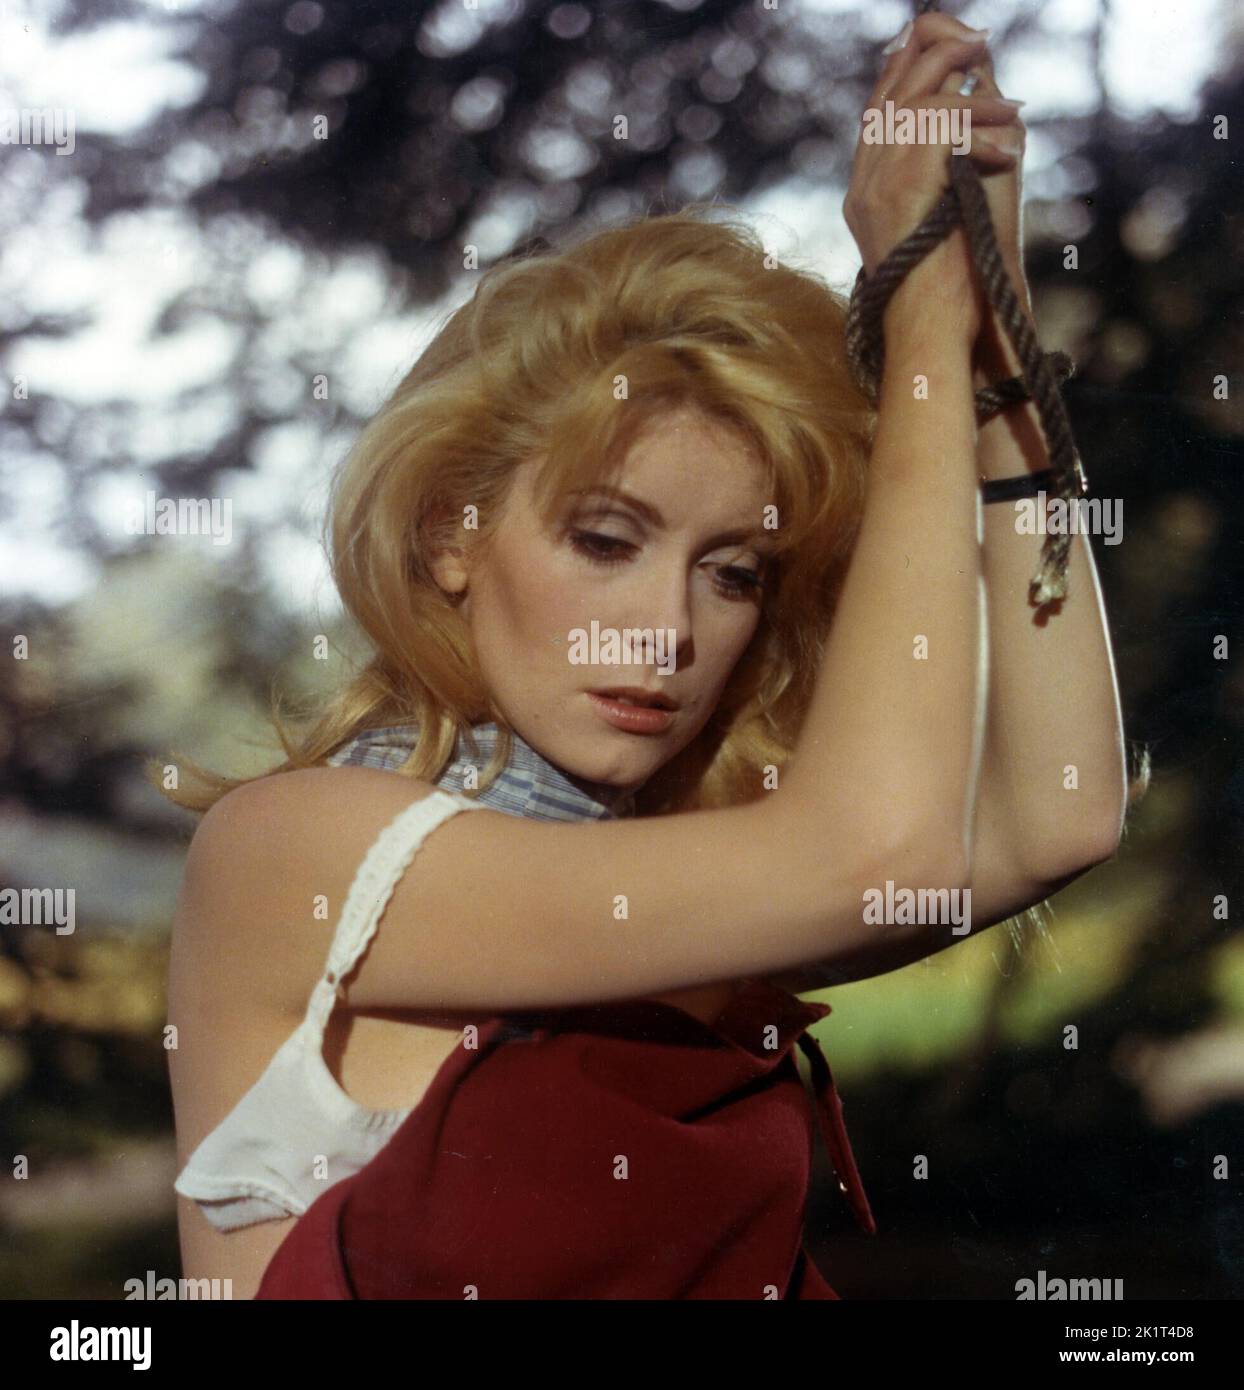 CATHERINE DENEUVE à BELLE DE JOUR (1967), dirigée par LUIS BUÑUEL. Crédit: PARIS FILM/CINQ FILM / Album Banque D'Images